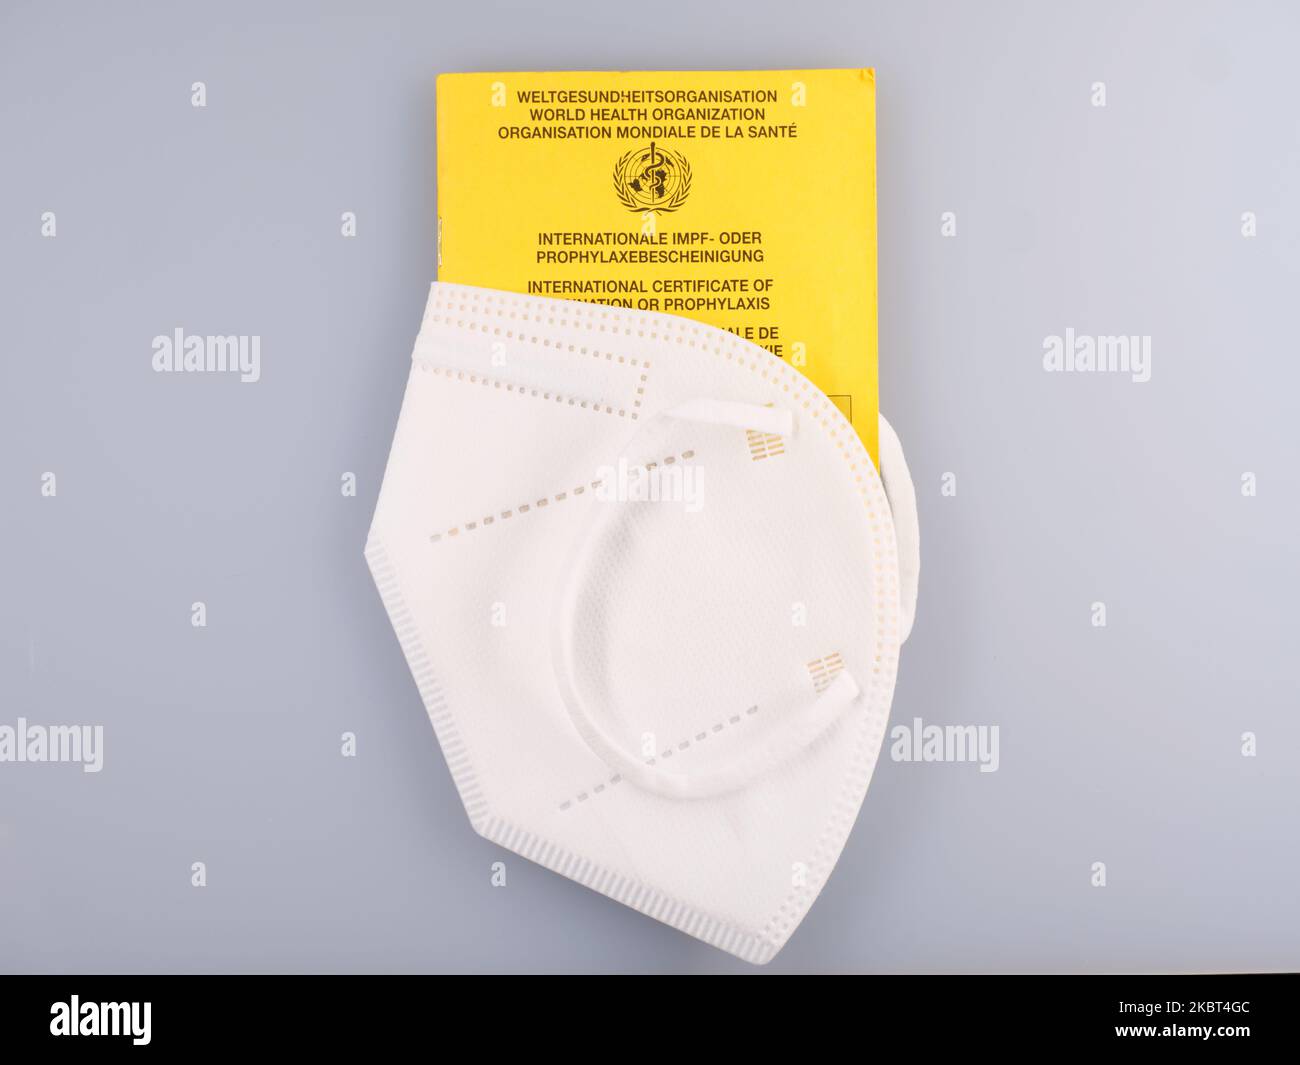 Certificato internazionale di vaccinazione con maschera protettiva. Corona Concept Words on the certifikate: World Health Organisation + Internation Certifik Foto Stock